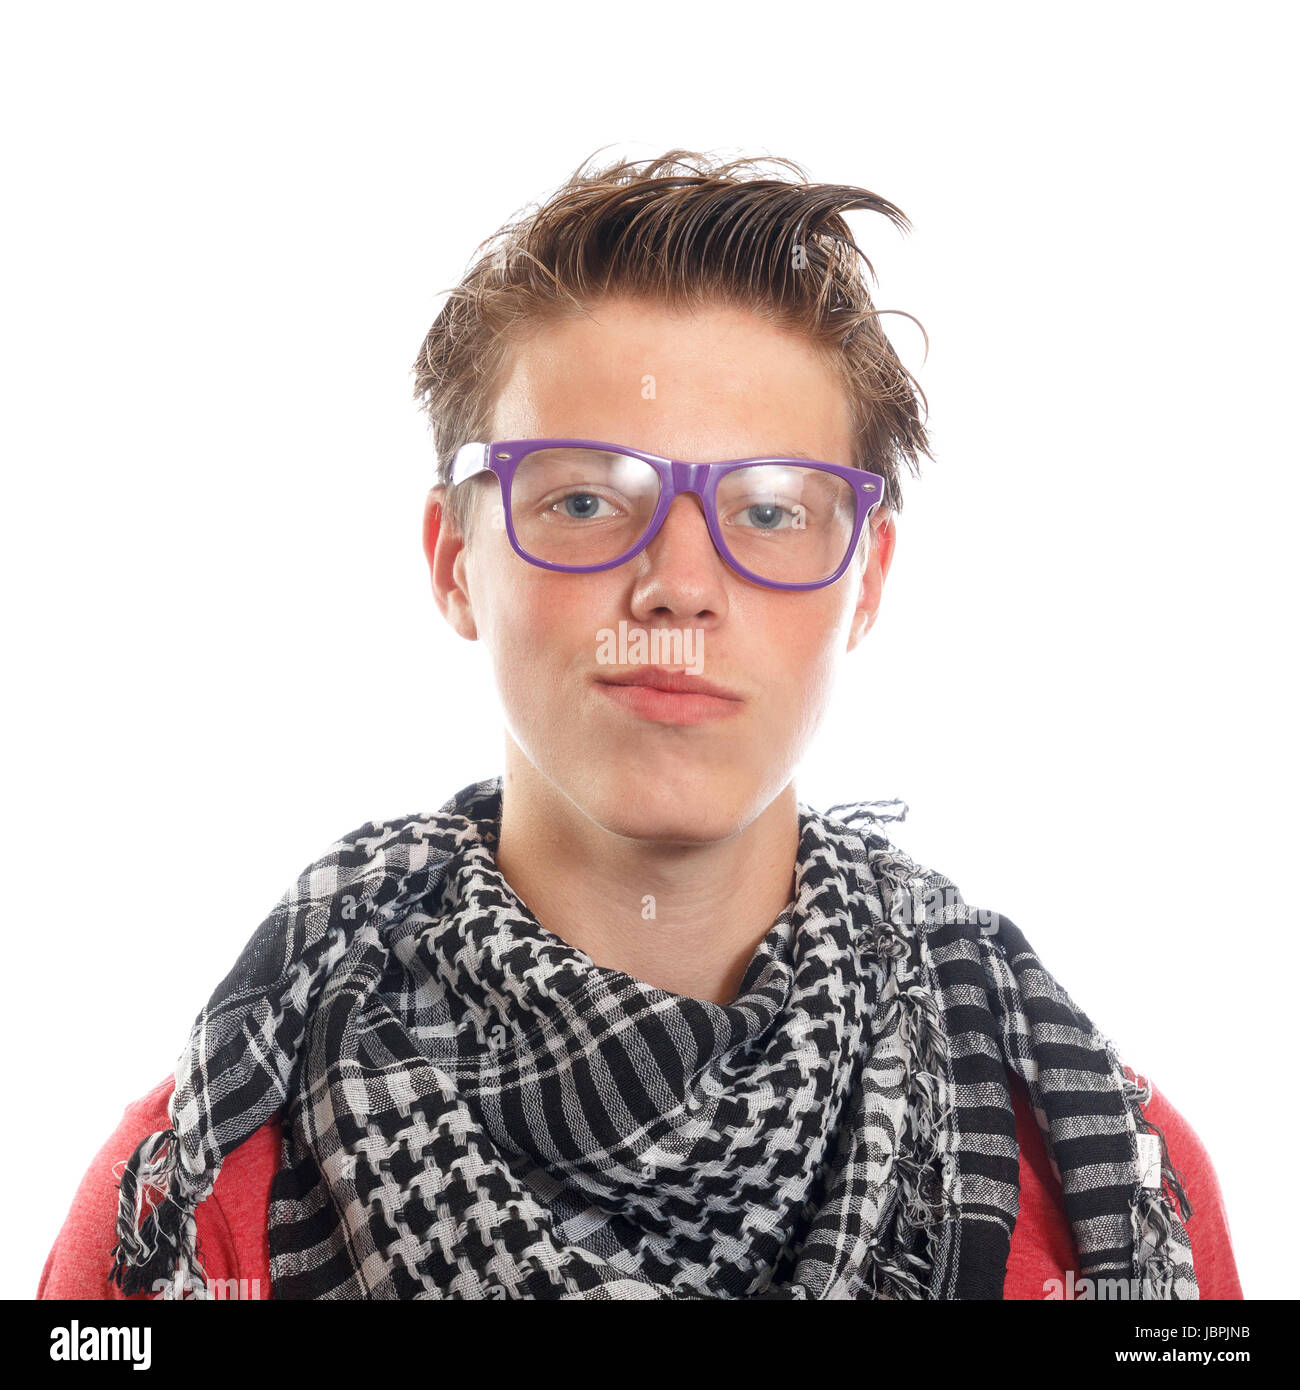 Un garçon ado hipster avec un foulard et des lunettes Photo Stock - Alamy